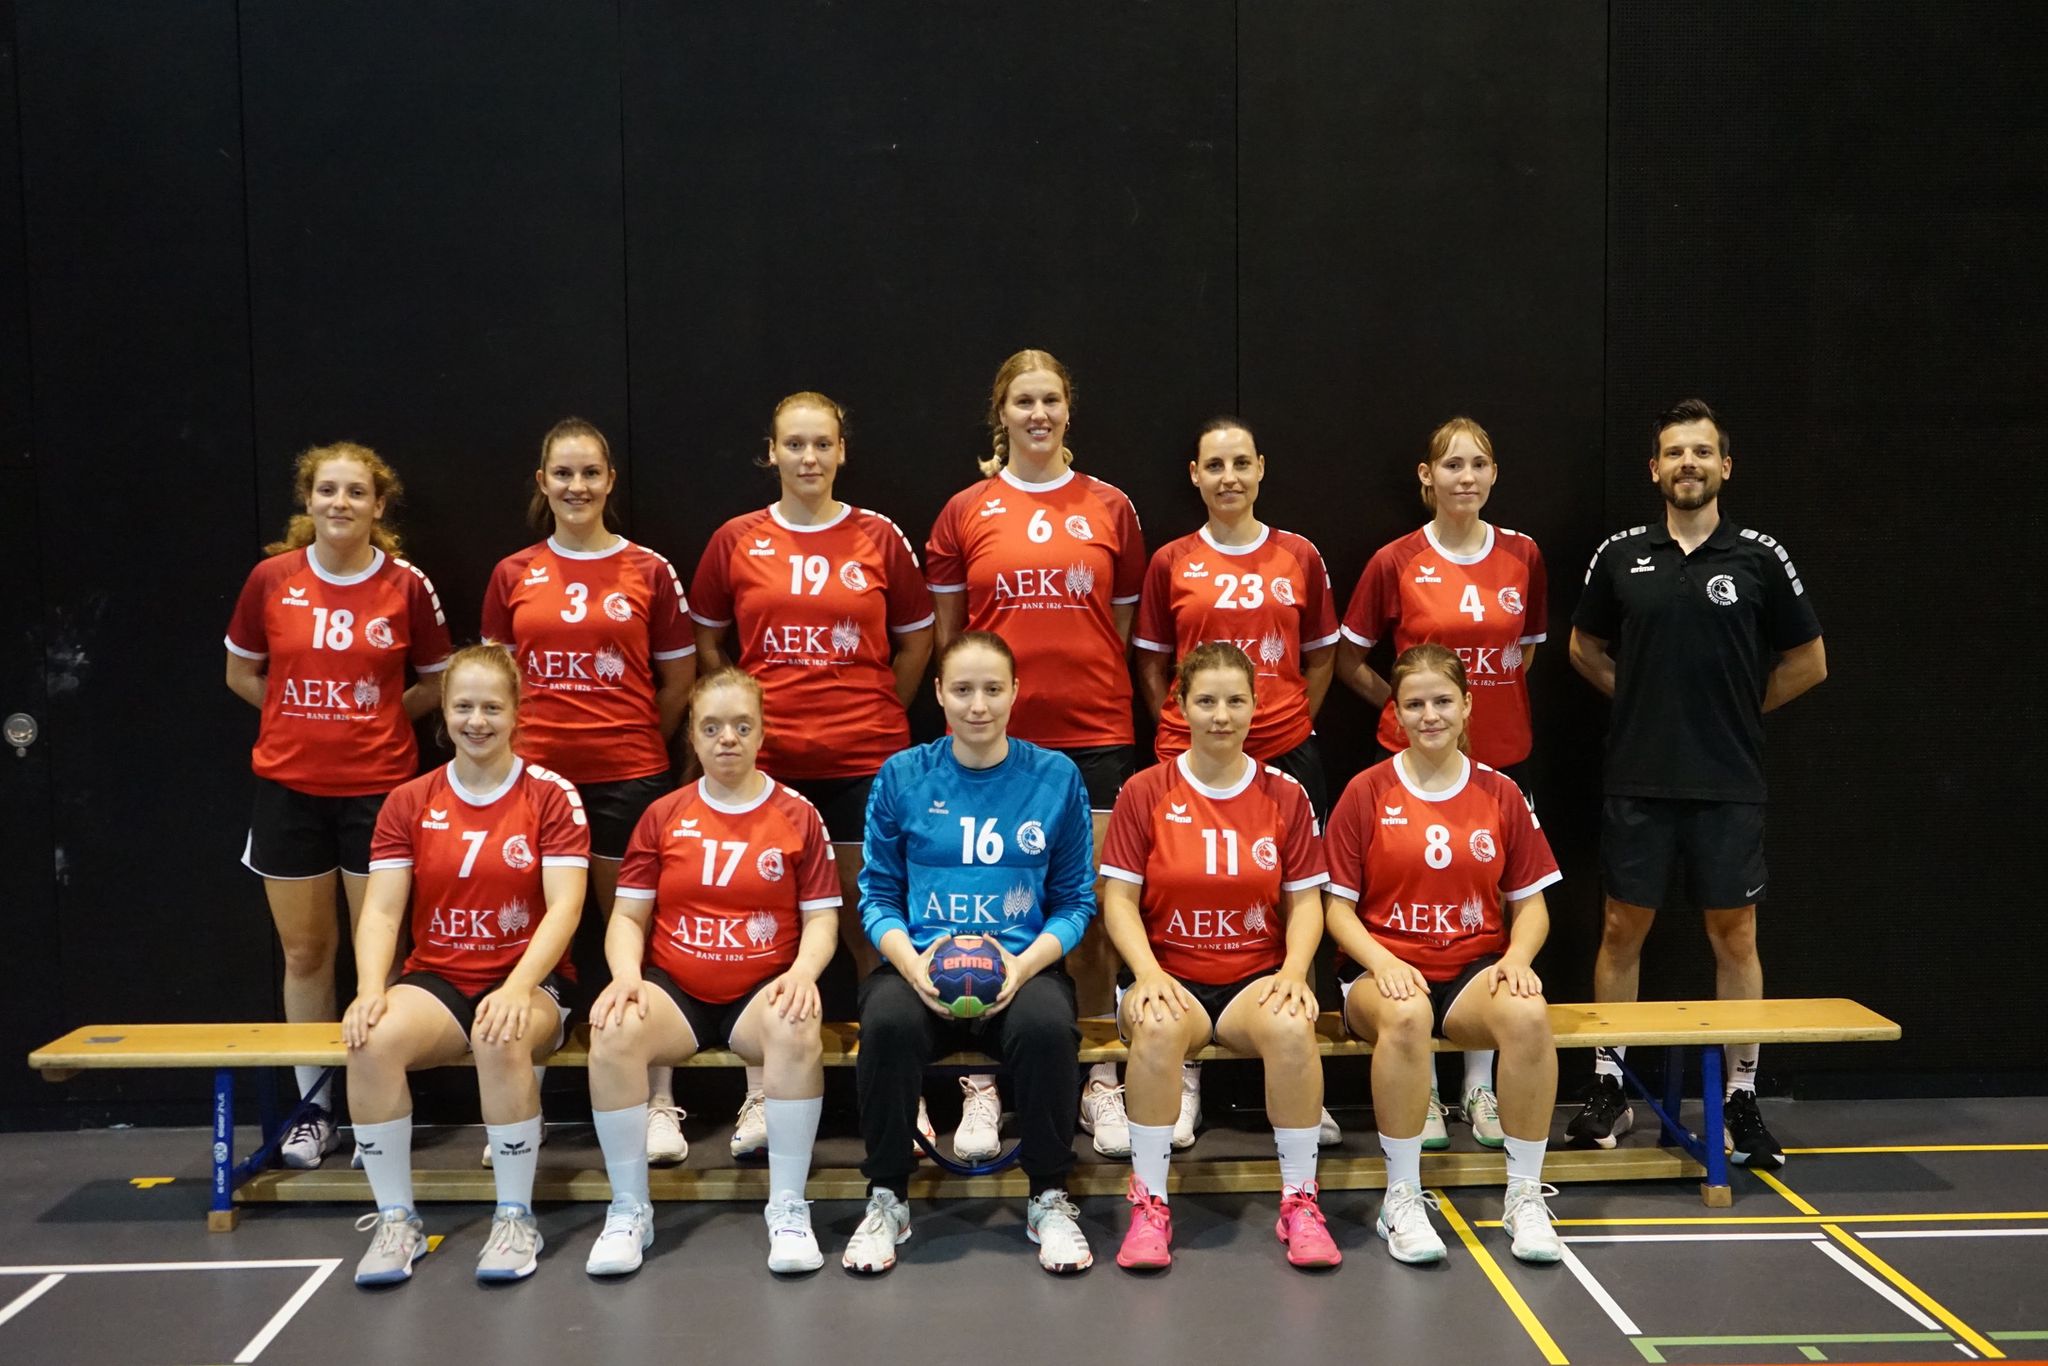 Dame – Spielgemeinschaft Rotweiss Thun & BSC Grosshöchstetten Handball